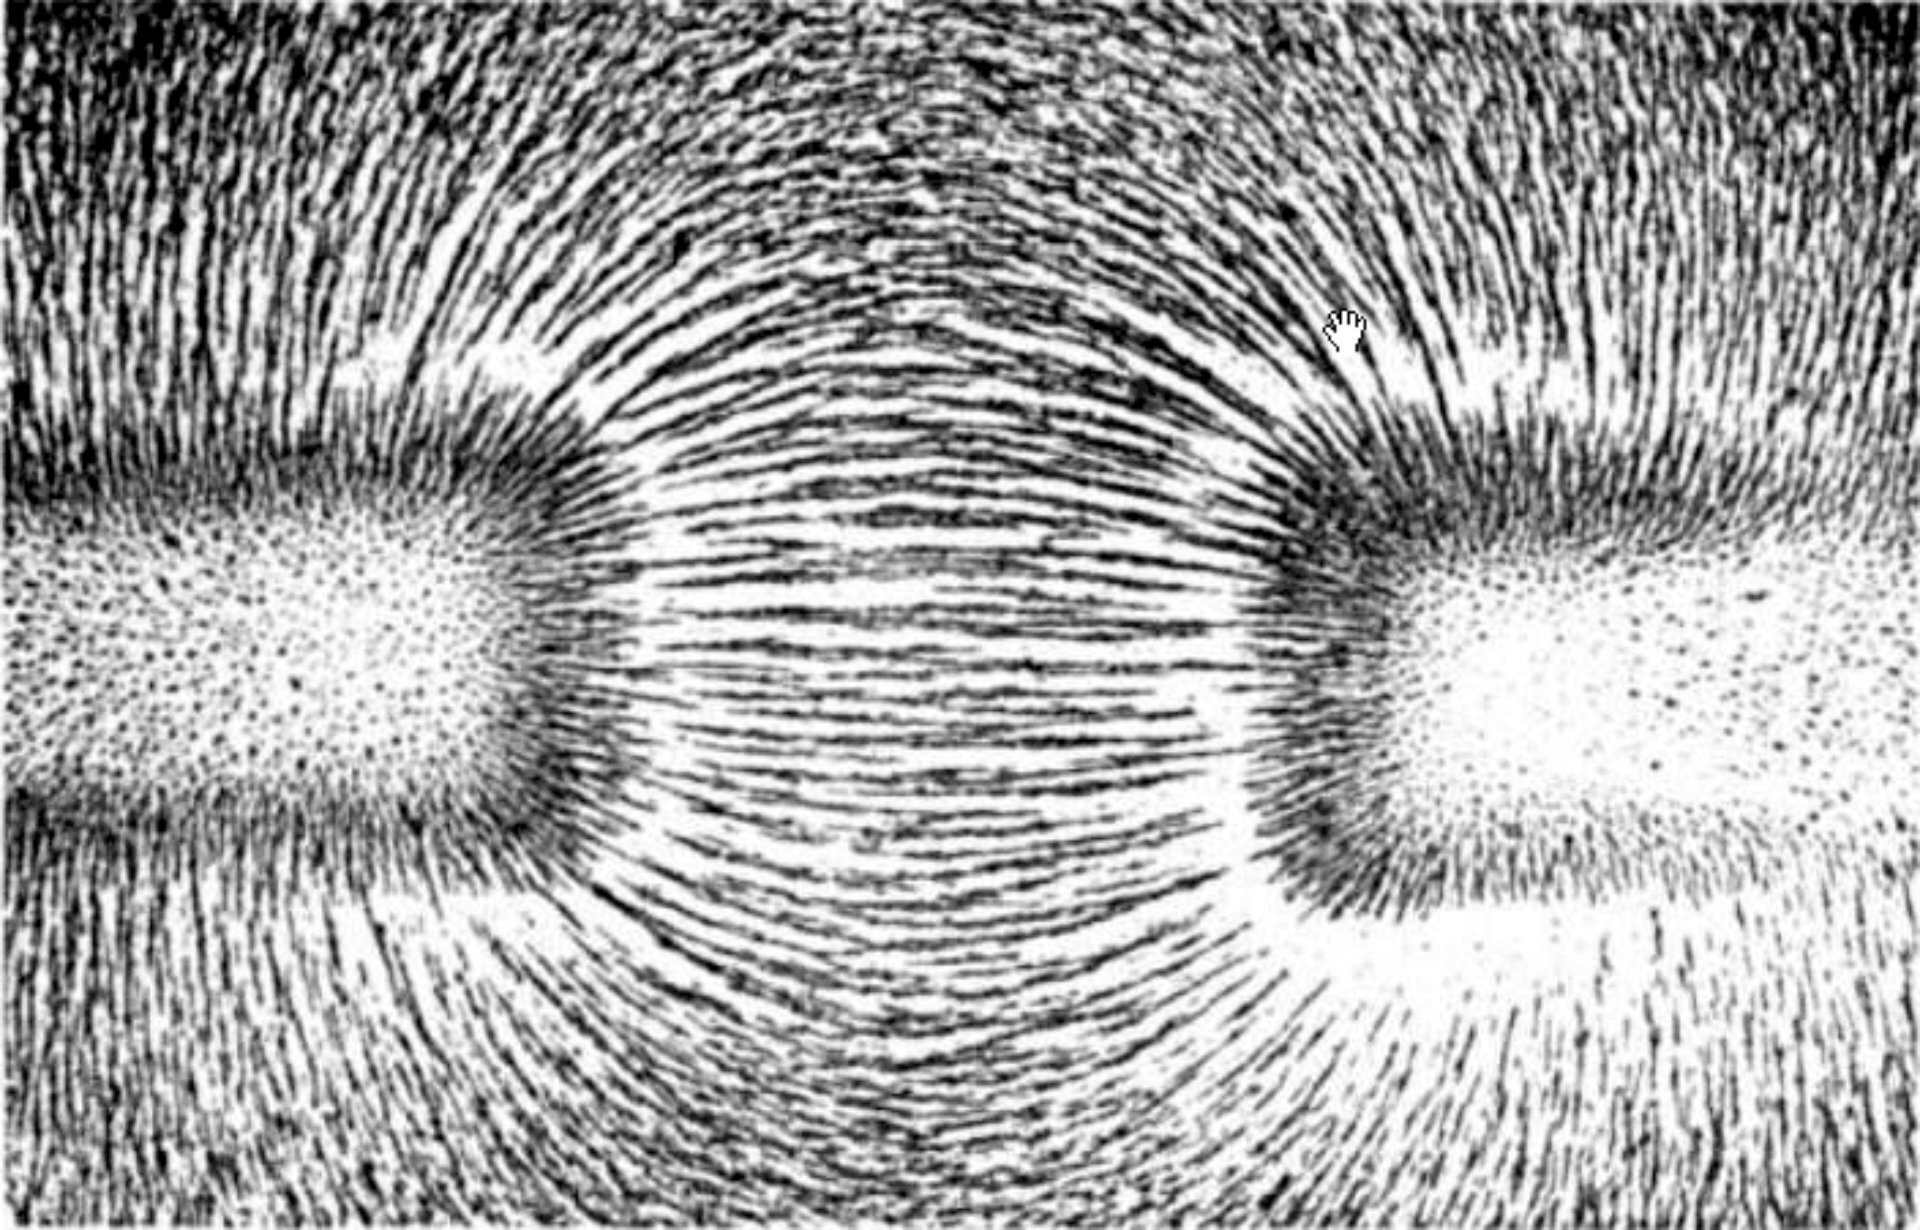 Na fotografii znajdują się dwa magnesy sztabkowe ułożone wzdłuż jednej linii poziomej. Widoczne są tylko fragmenty magnesów sąsiadujące ze sobą. Między biegunami magnesów znajdują się opiłki żelaza, które ułożyły się wzdłuż linii pola magnetycznego. Między biegunami blisko osi symetrii linie są poziome. Linie leżące niżej są wygięte łukowato w dół, a linie leżące wyżej są wygięte łukowato w górę. 